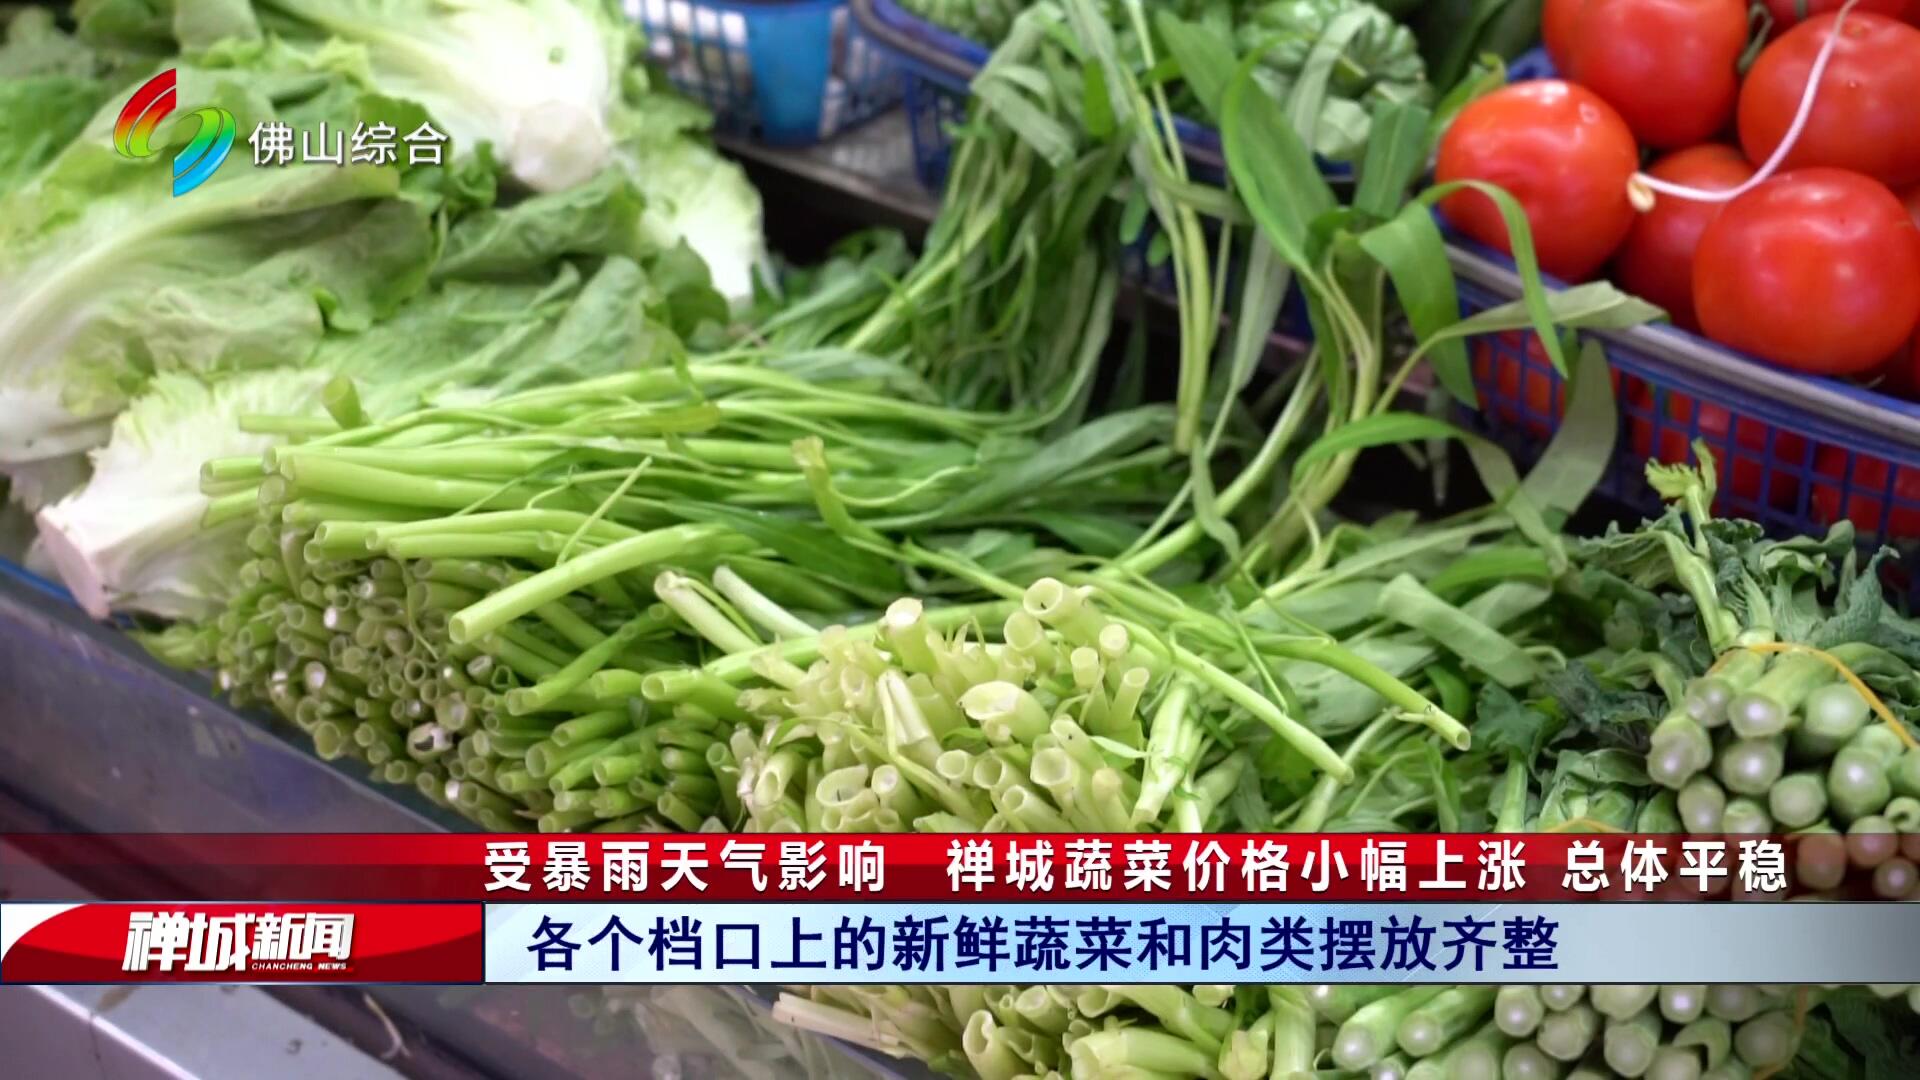 受暴雨天气影响  禅城蔬菜价格小幅上涨 总体平稳